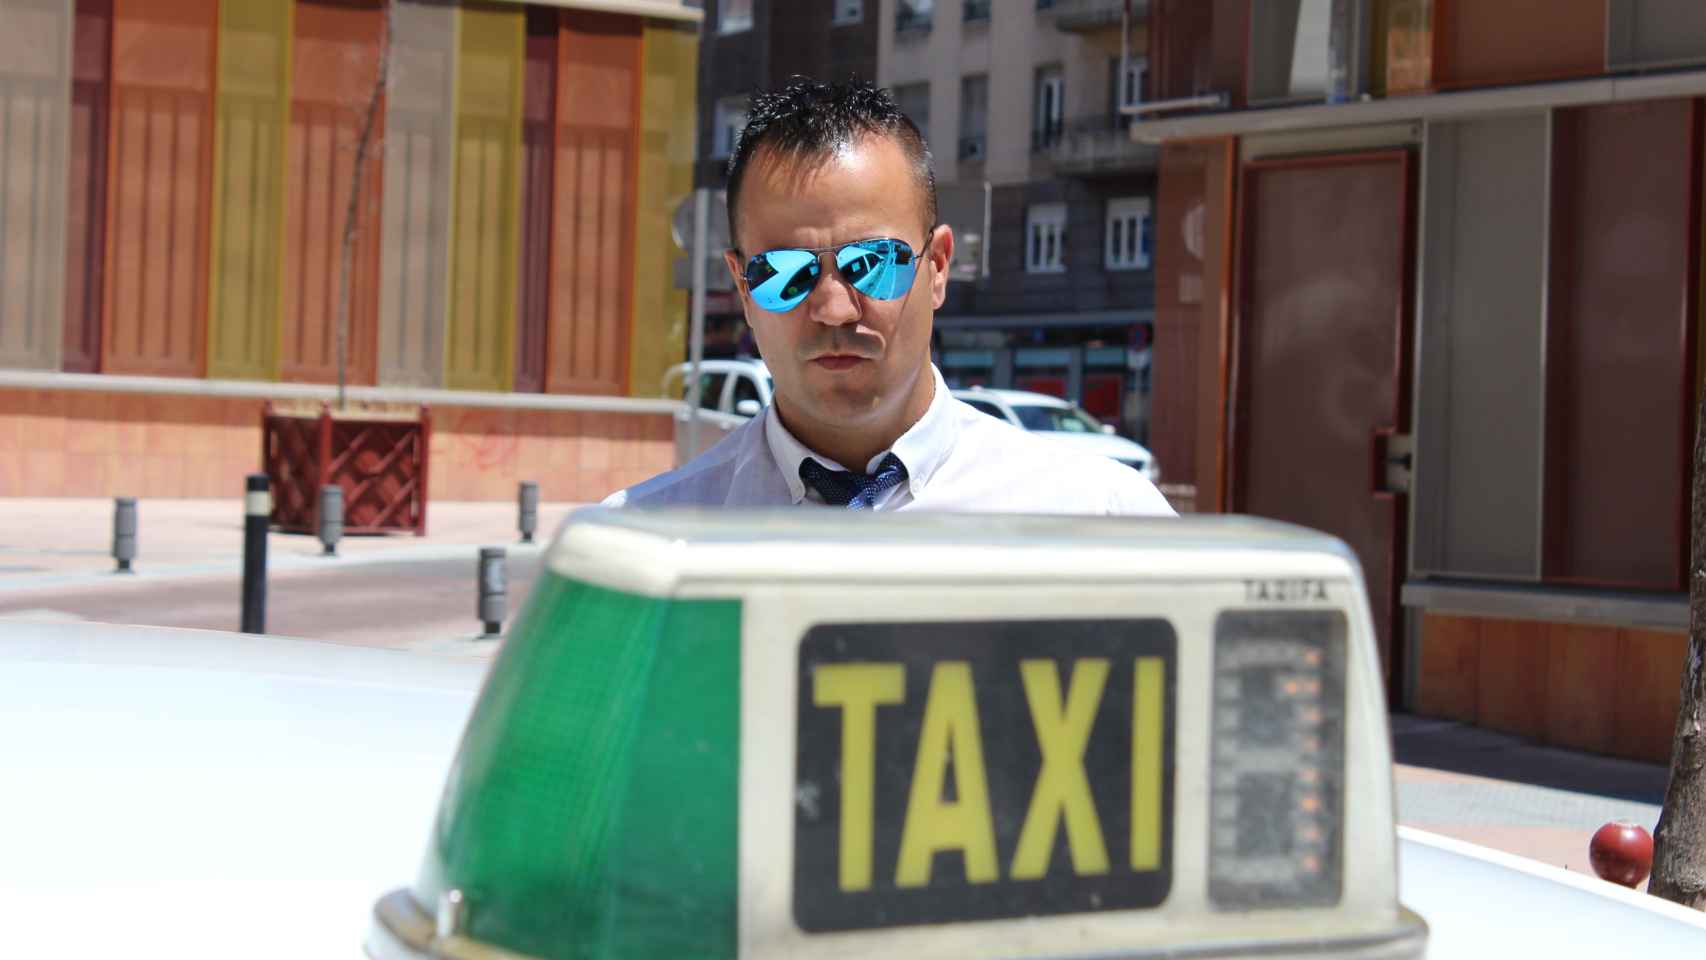 Apatrullando la ciudad en el taxi del Peseto loco: No soy un nazi